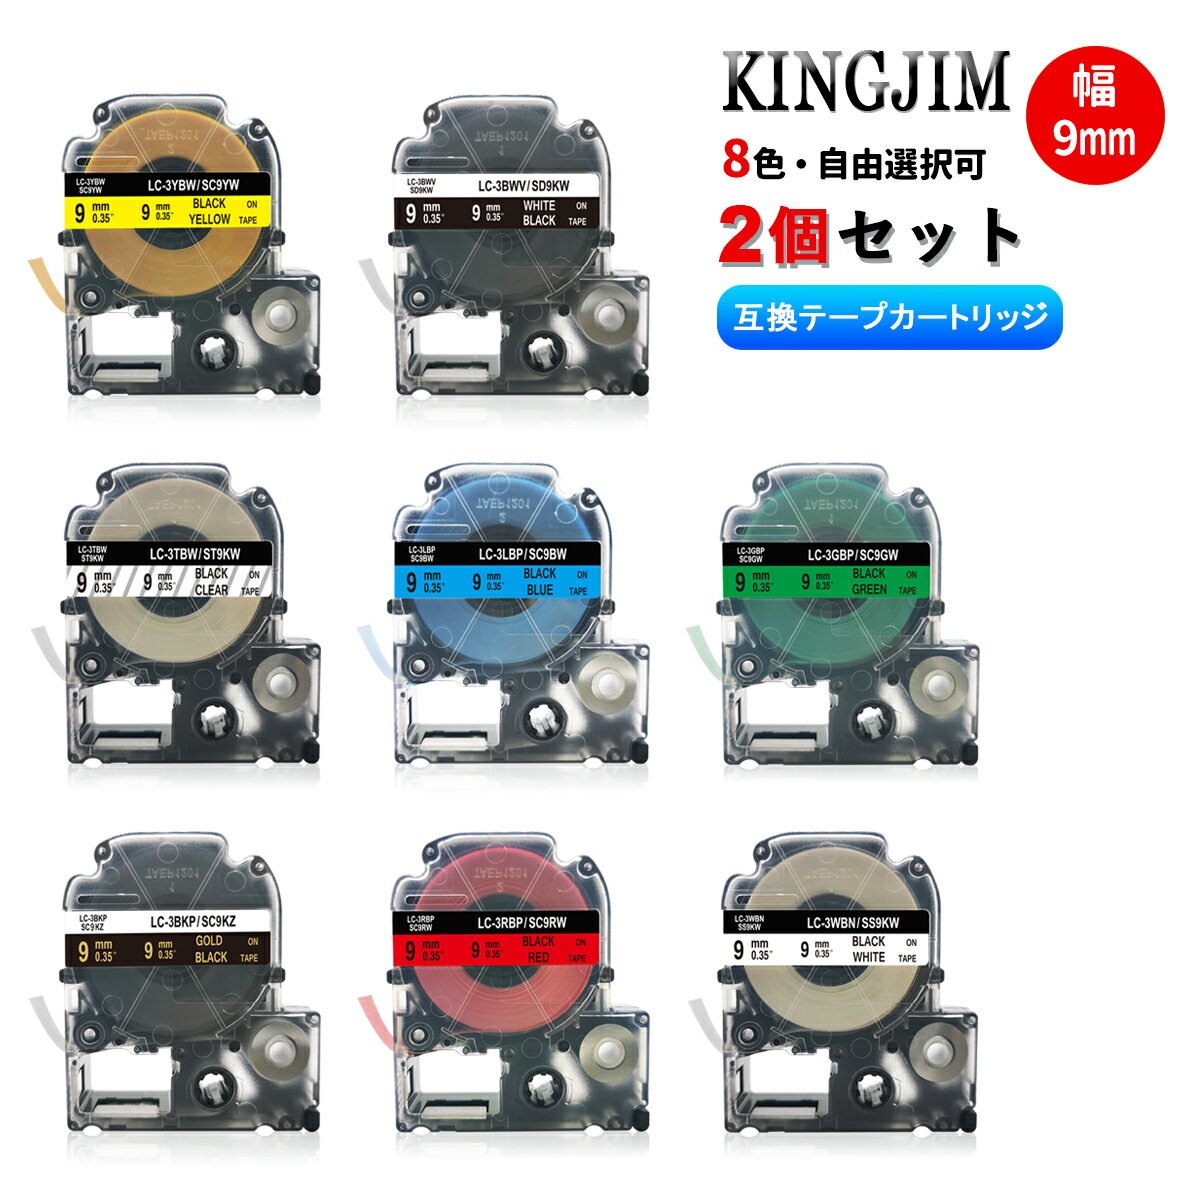 キングジム用 テプラテープ 9mm幅X8m巻・8色選択可 互換品 2個 キングジム 互換テープ 互換テープカートリッジ テプラPRO機種対応